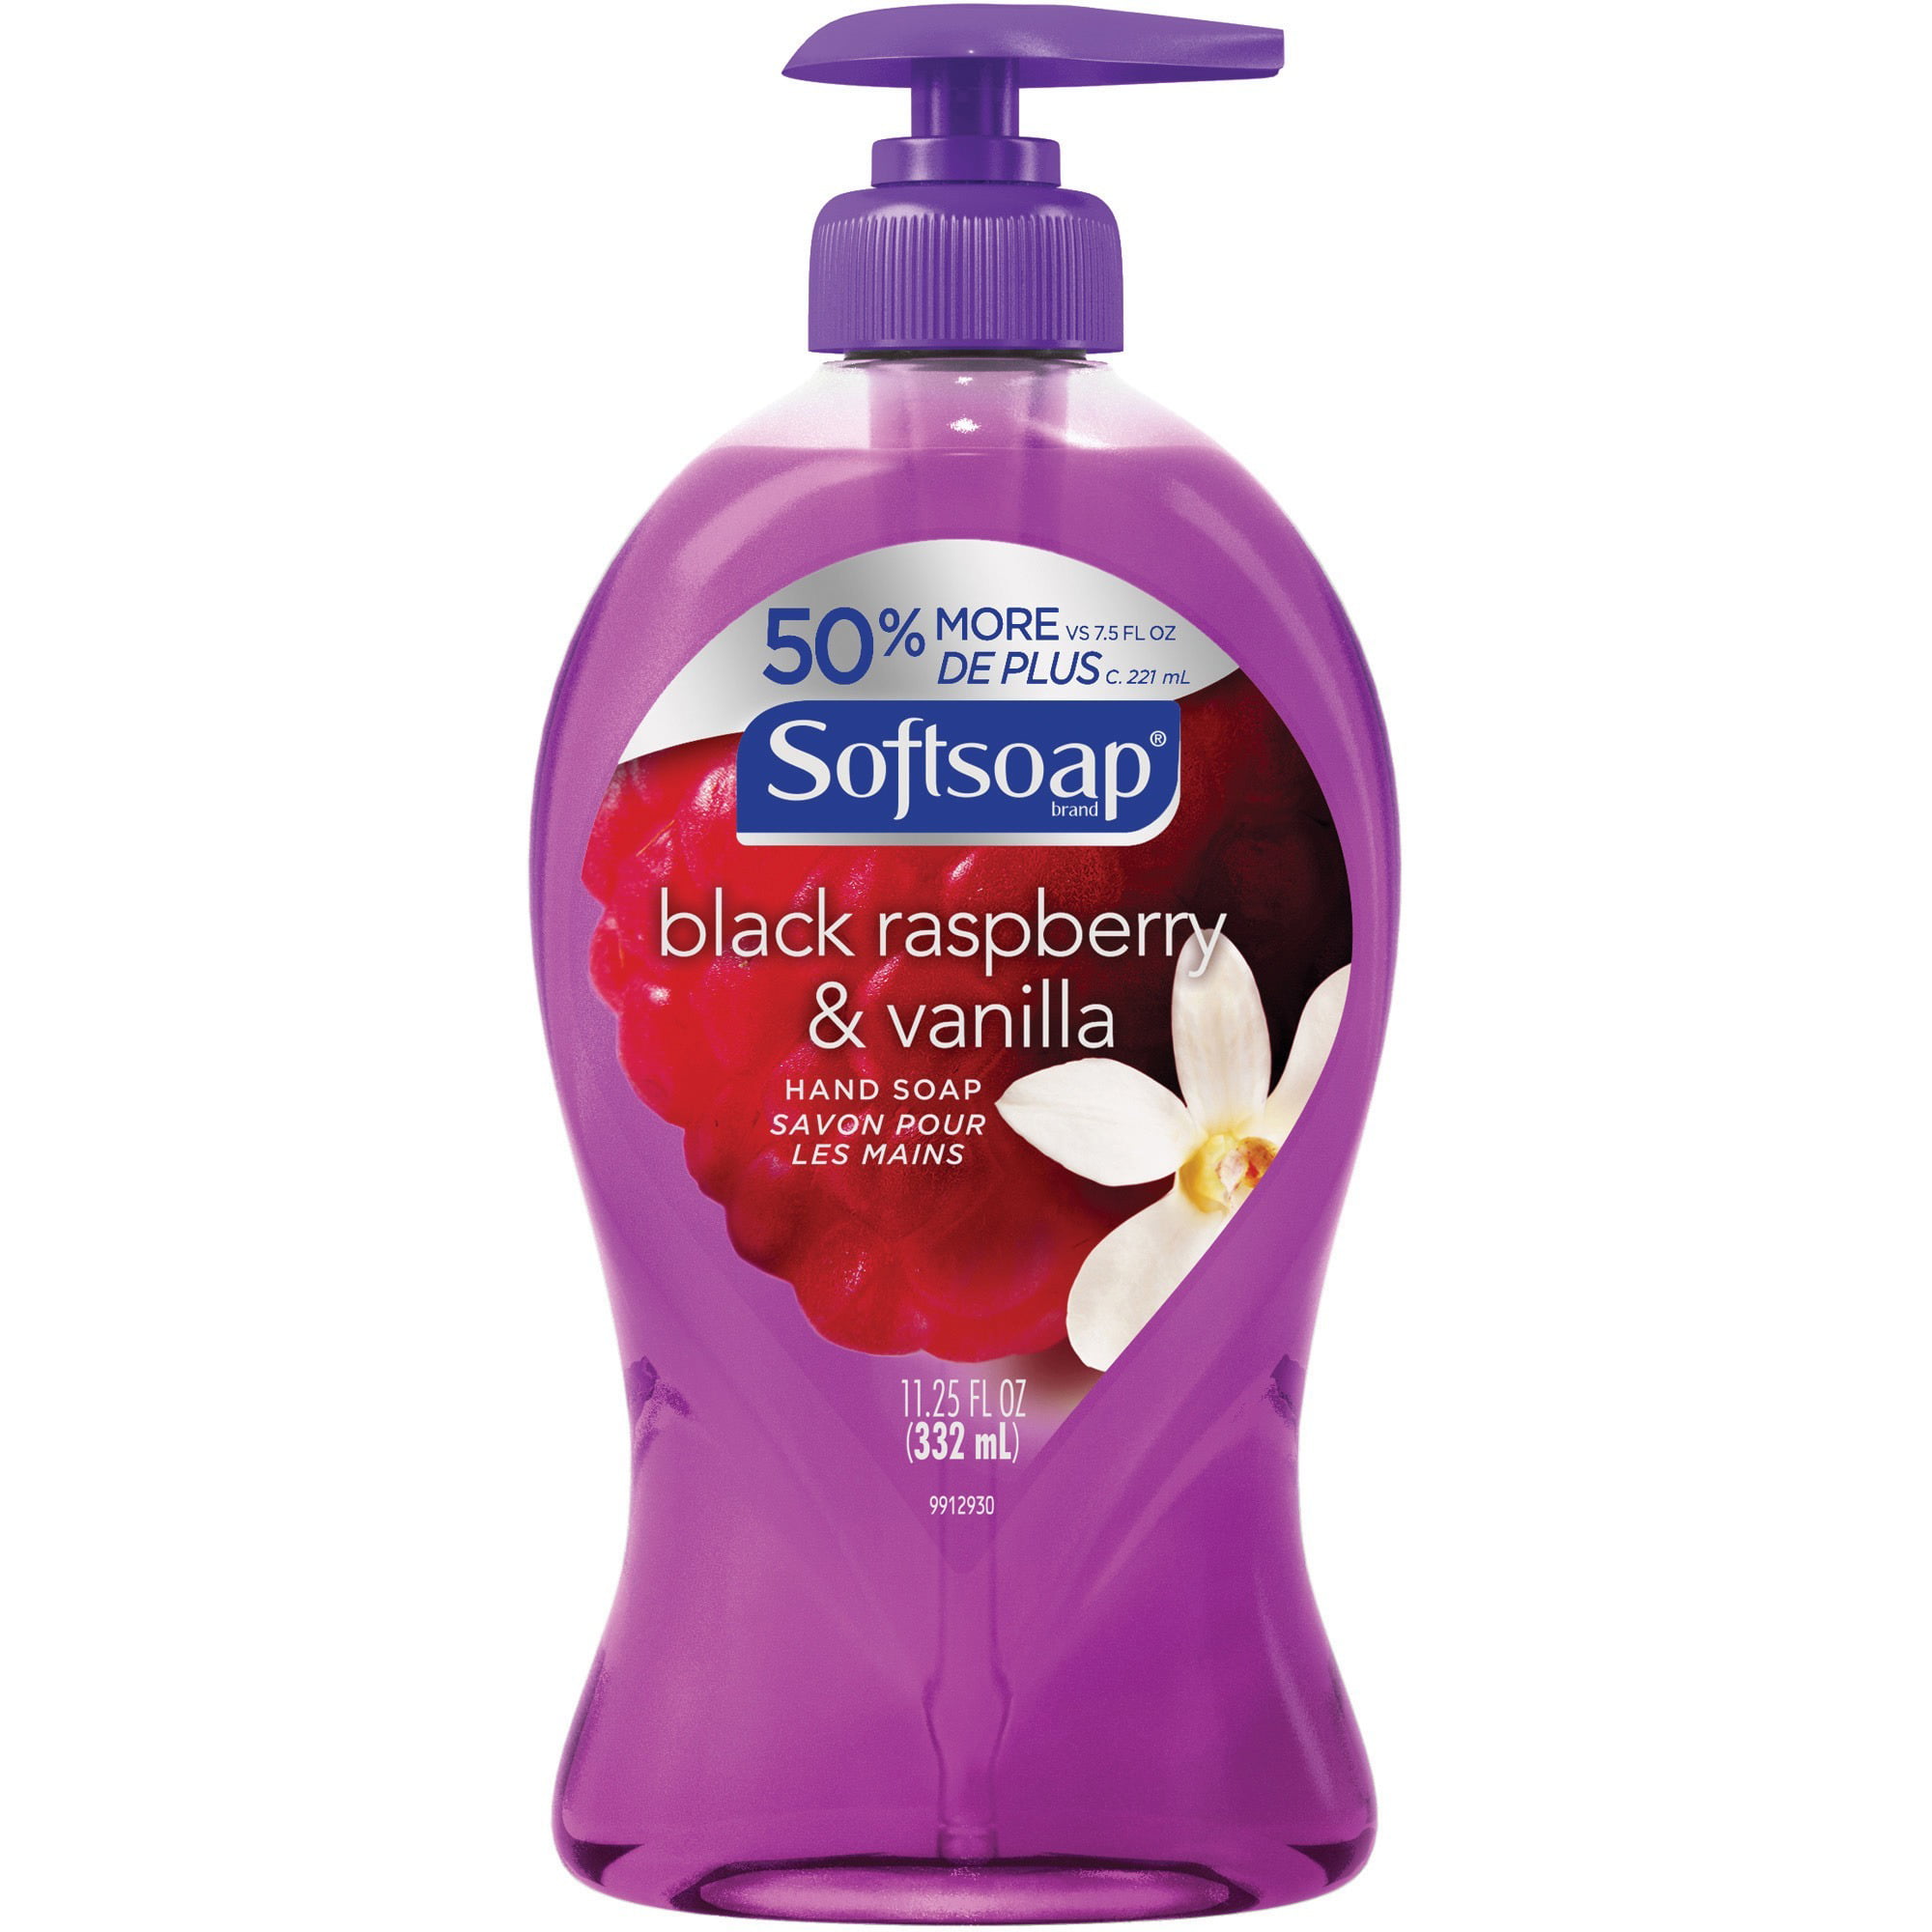 Softsoap, CPC03573CT, Raspberry/Vanilla Hand Soap, 6 / Carton, Purple